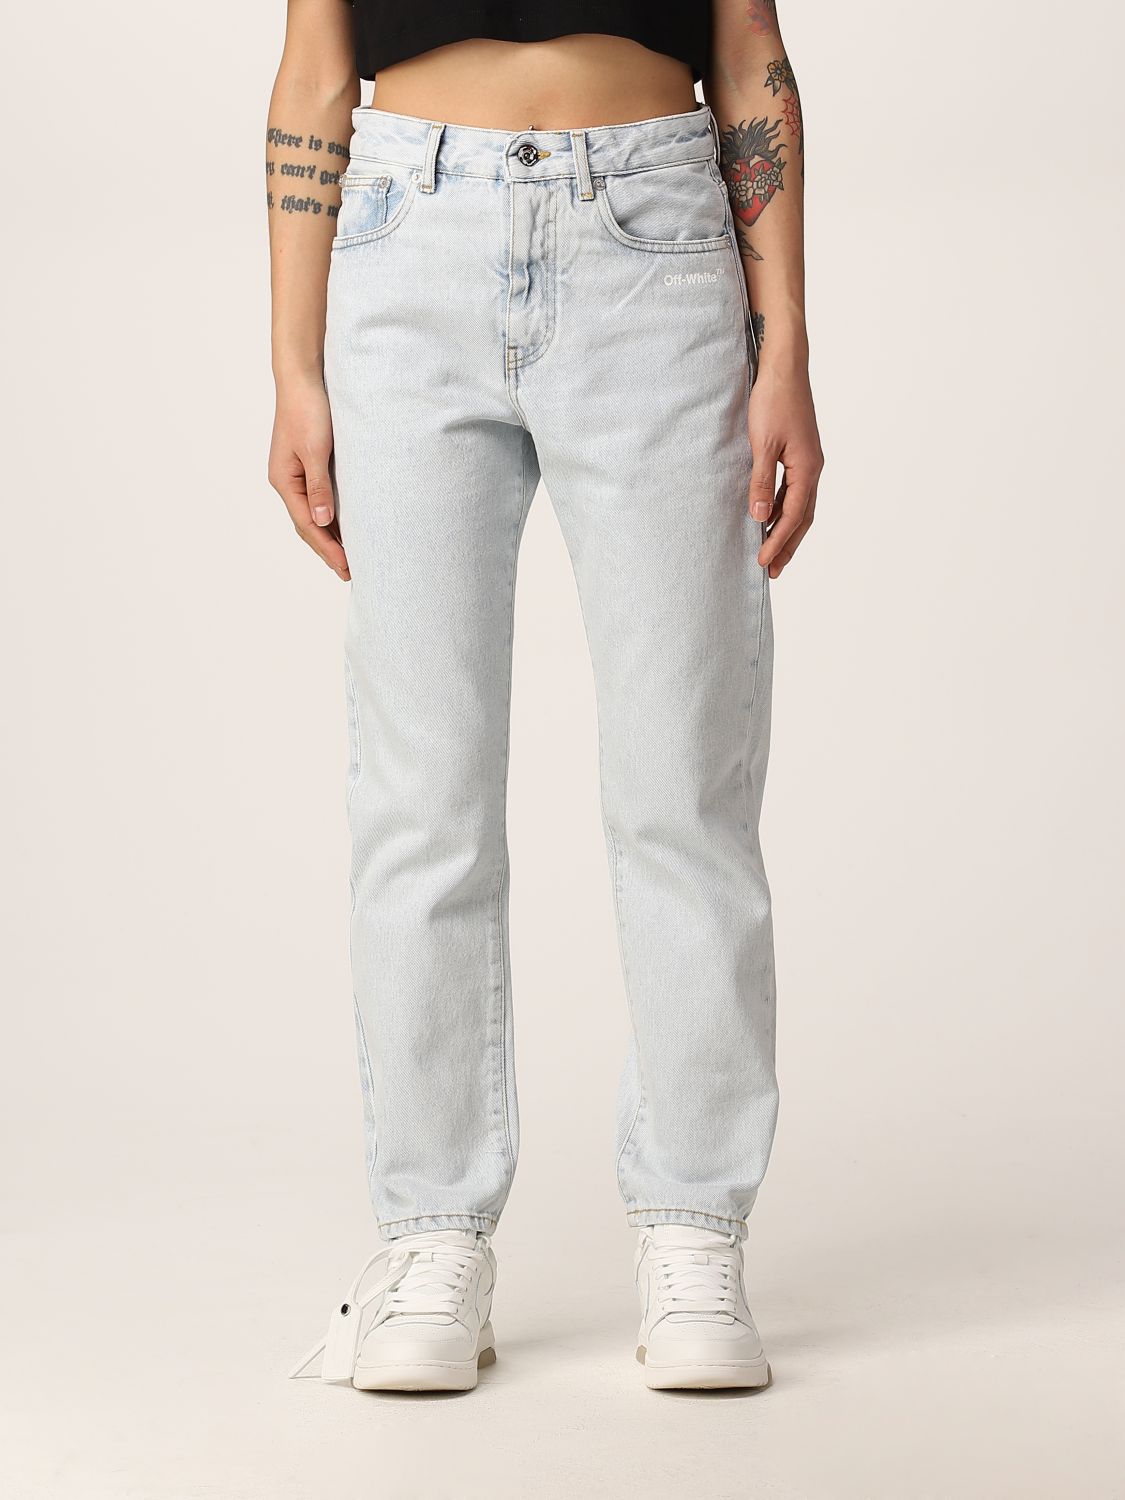 Jeans White Bull Giglio.com Abbigliamento Pantaloni e jeans Jeans 